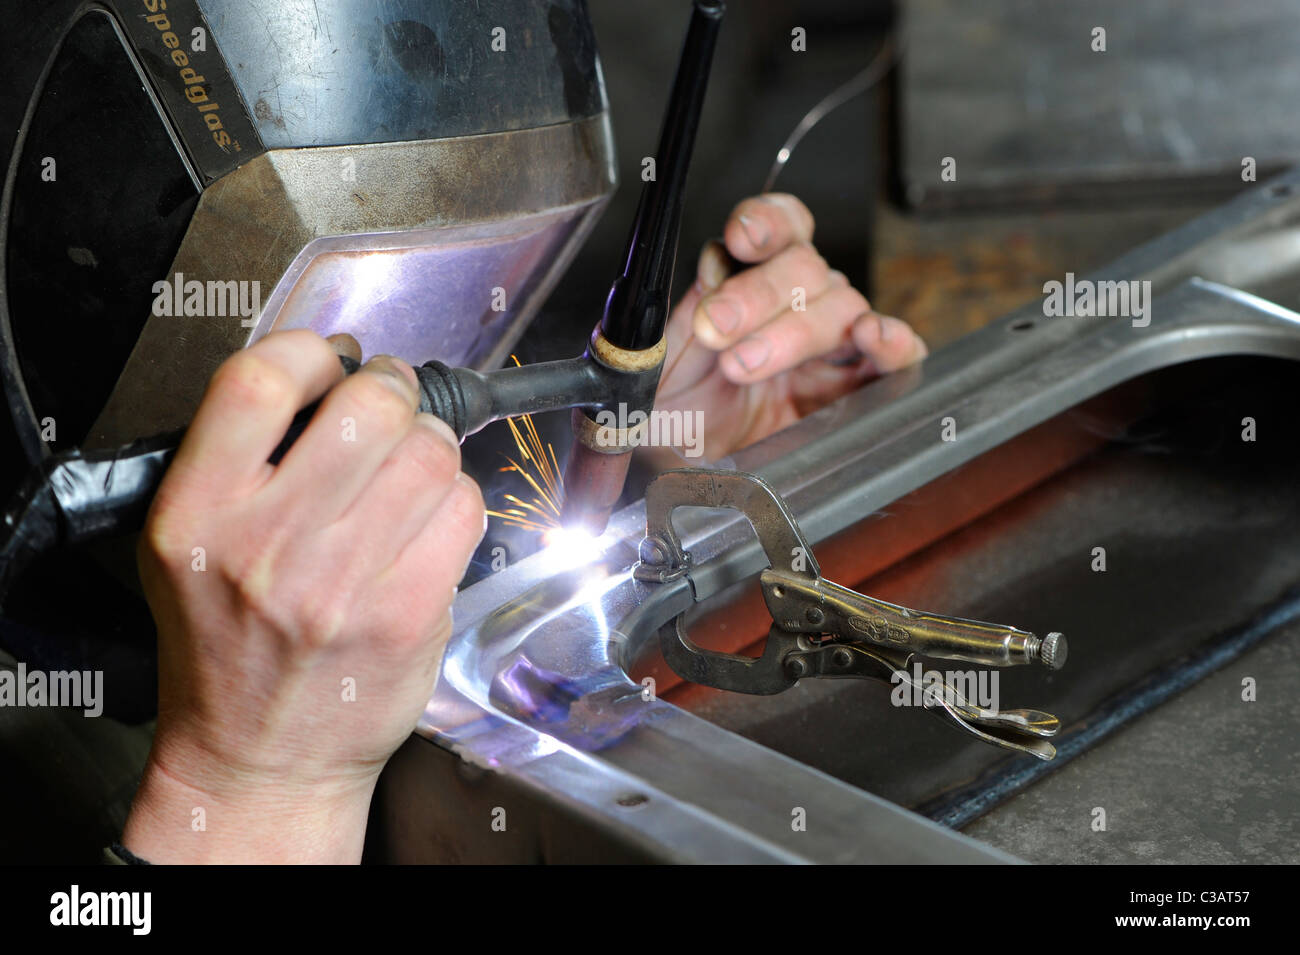 Un travailleur qualifié au métal de travail des métaux, en utilisant la méthode de soudage TIG pour effectuer une réparation sur un VW camping-porte. Banque D'Images